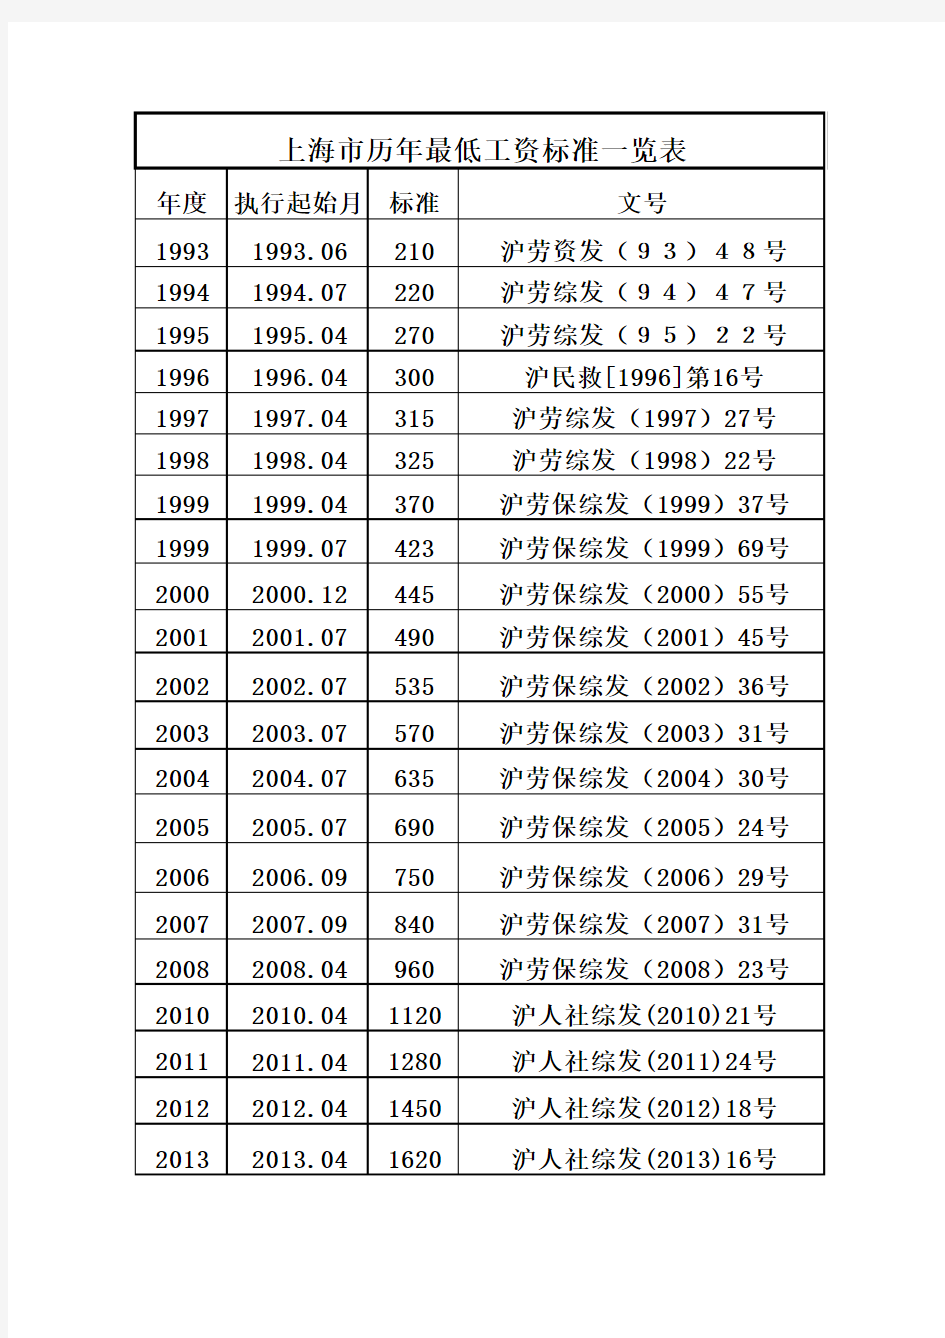 上海市历年最低工资标准一览表-更新至2013